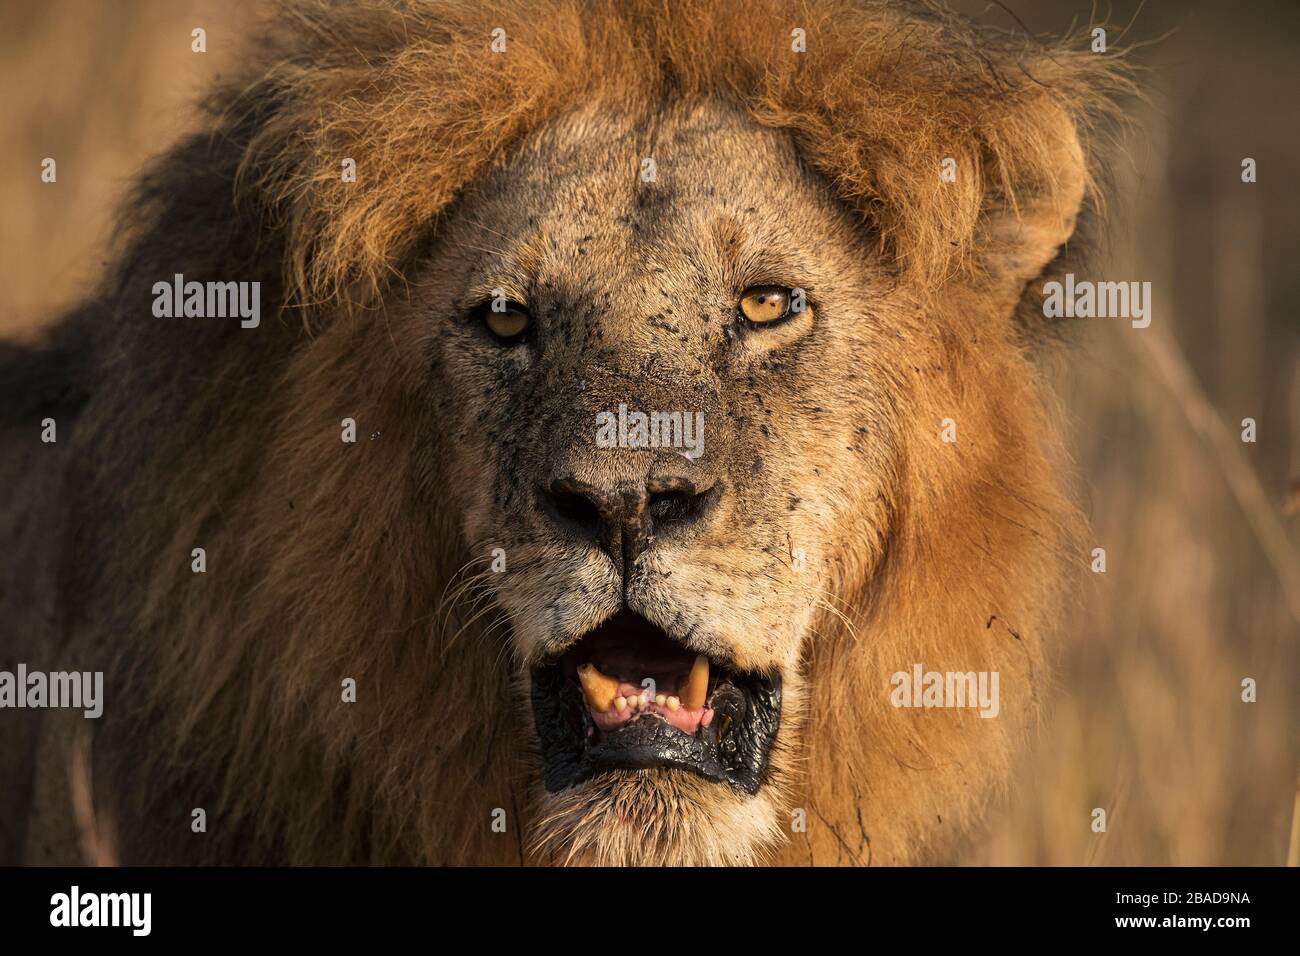 L'image du lion africain (Panthera leo) dans le parc national de Masai mara, au Kenya Banque D'Images